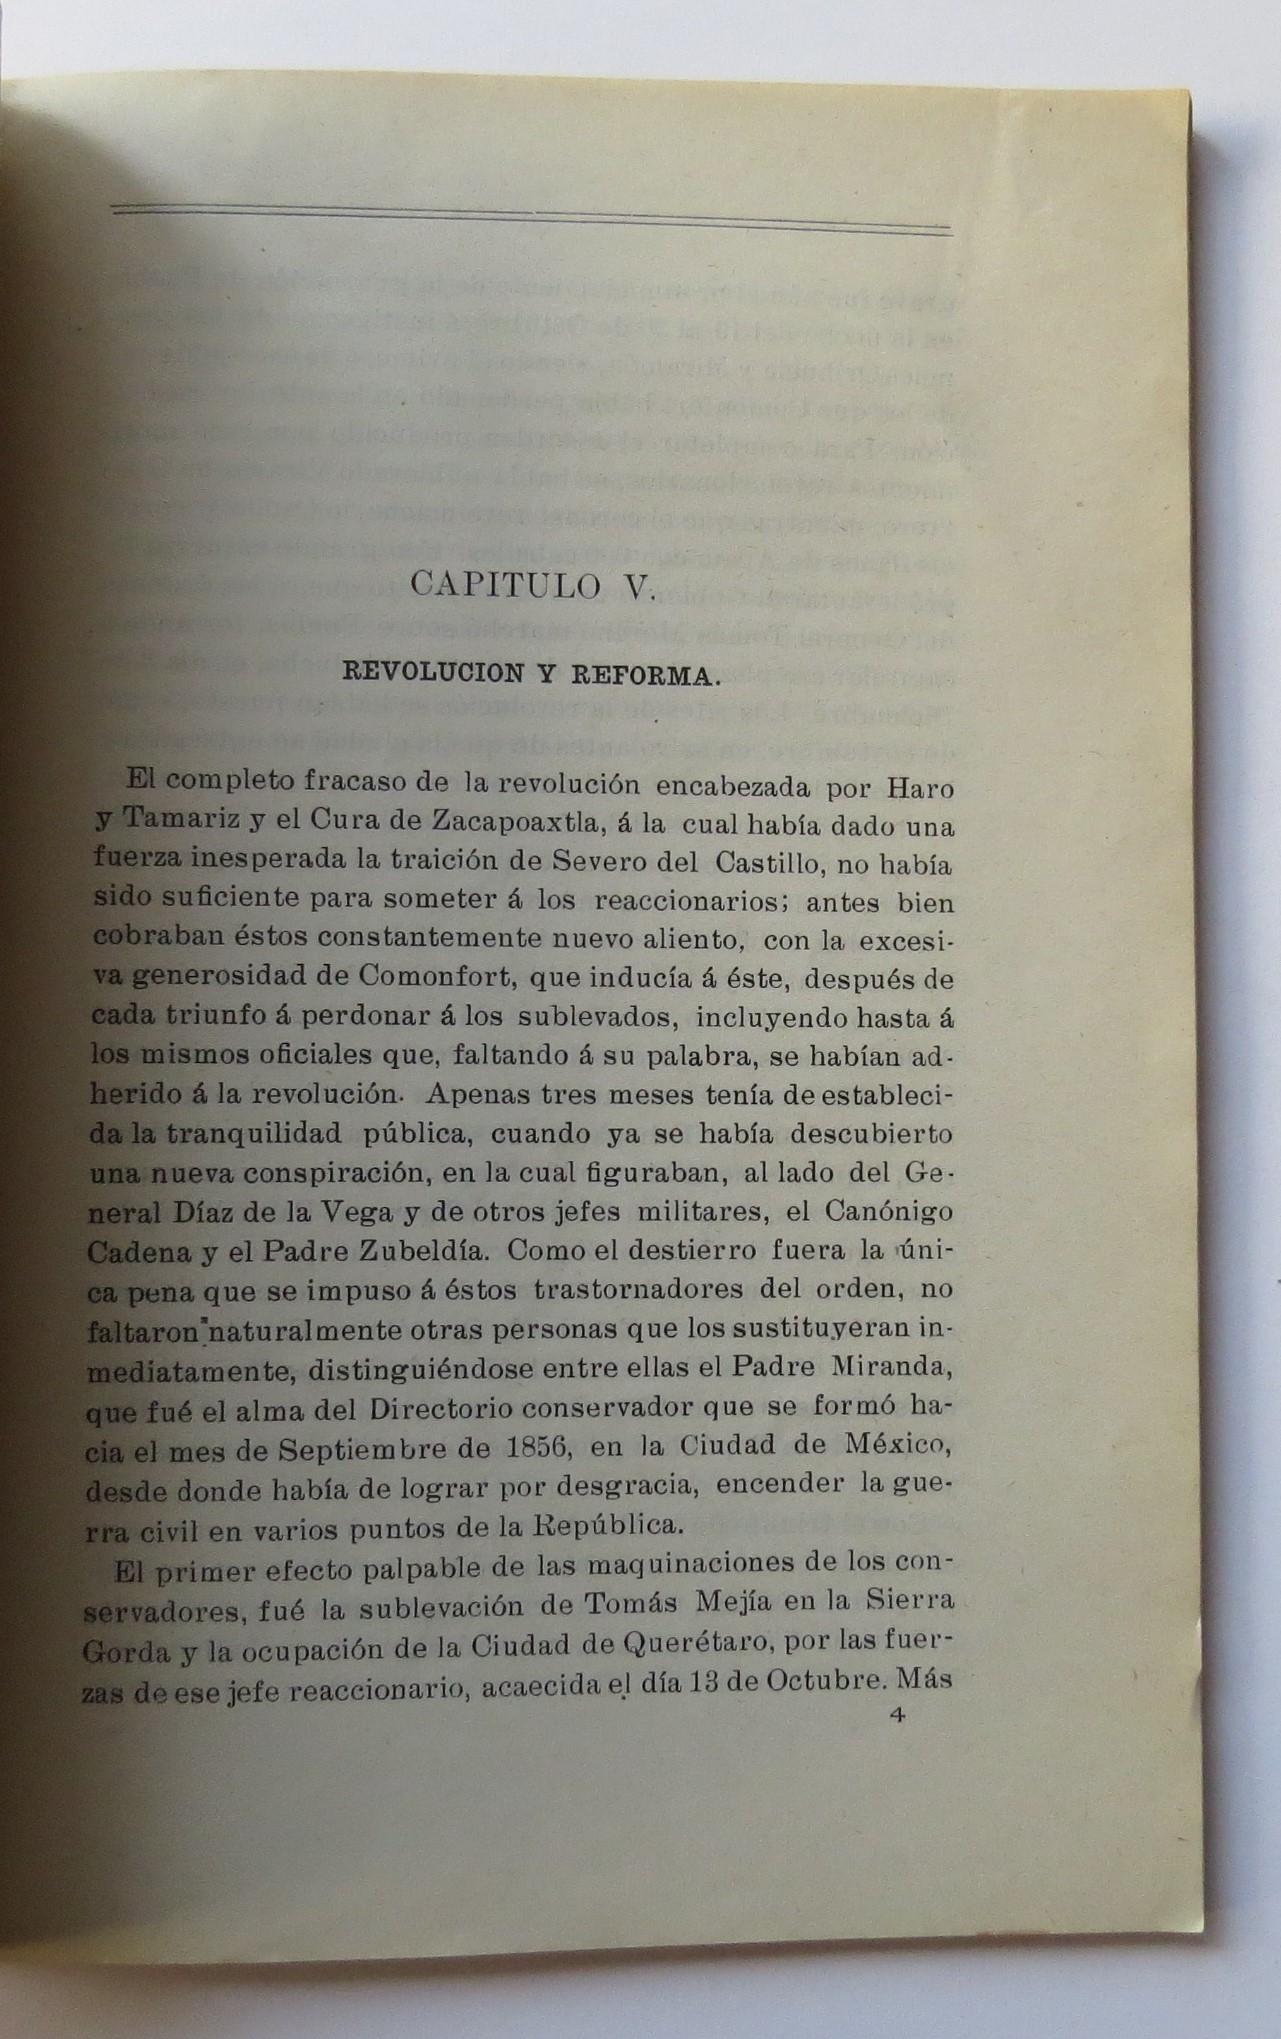 La Constitución de 1857 y las Leyes de Reforma en México by Ricardo ...